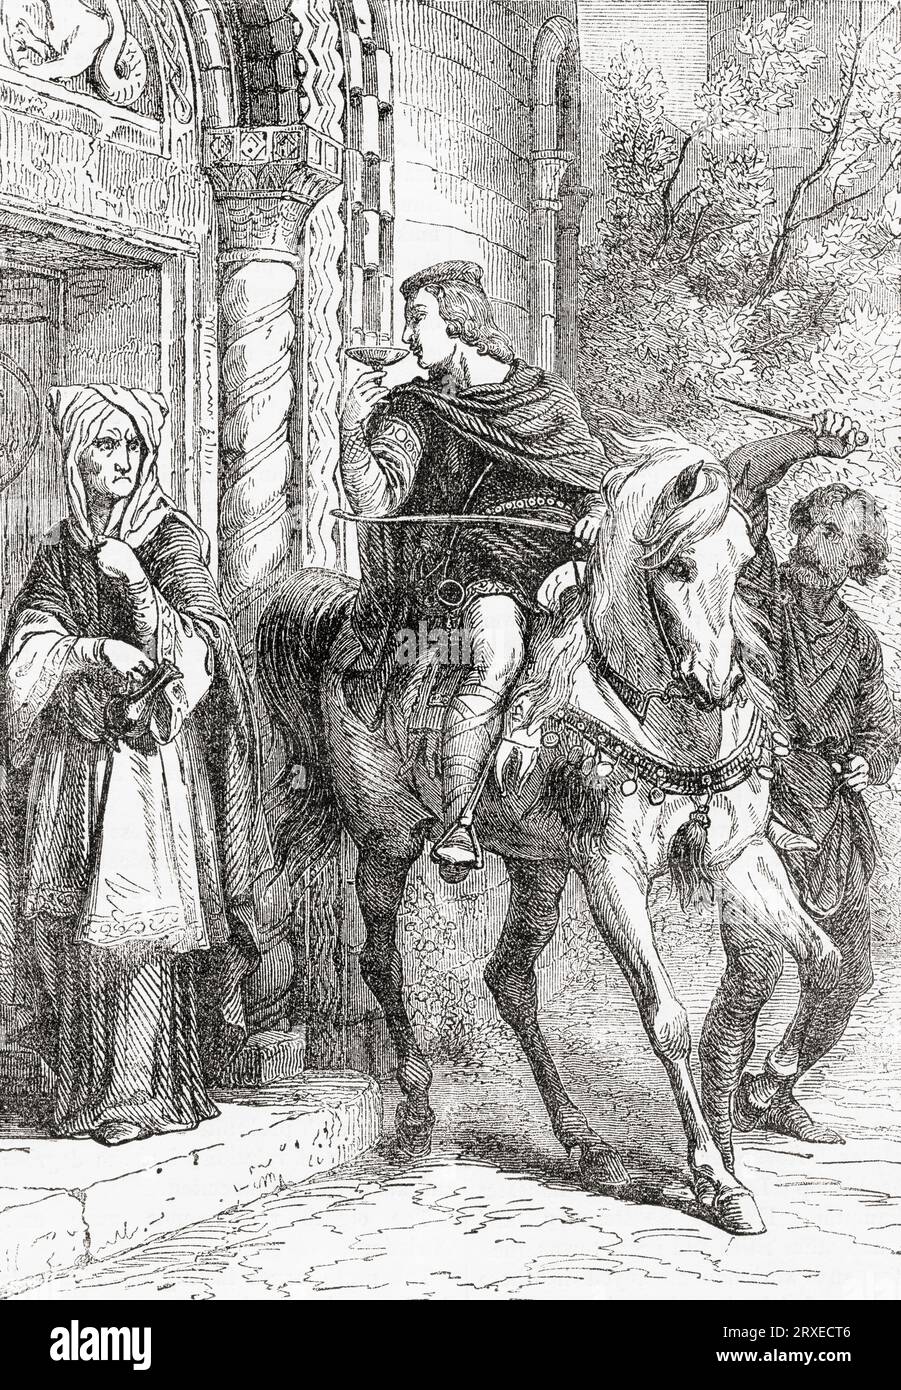 L'assassinat d'Édouard le Martyr. Edward, c. 962 – 978, souvent appelé le Martyr. Roi des Anglais de 975 jusqu'à son meurtre en 978. Extrait de Cassell's Illustrated History of England, publié en 1857. Banque D'Images